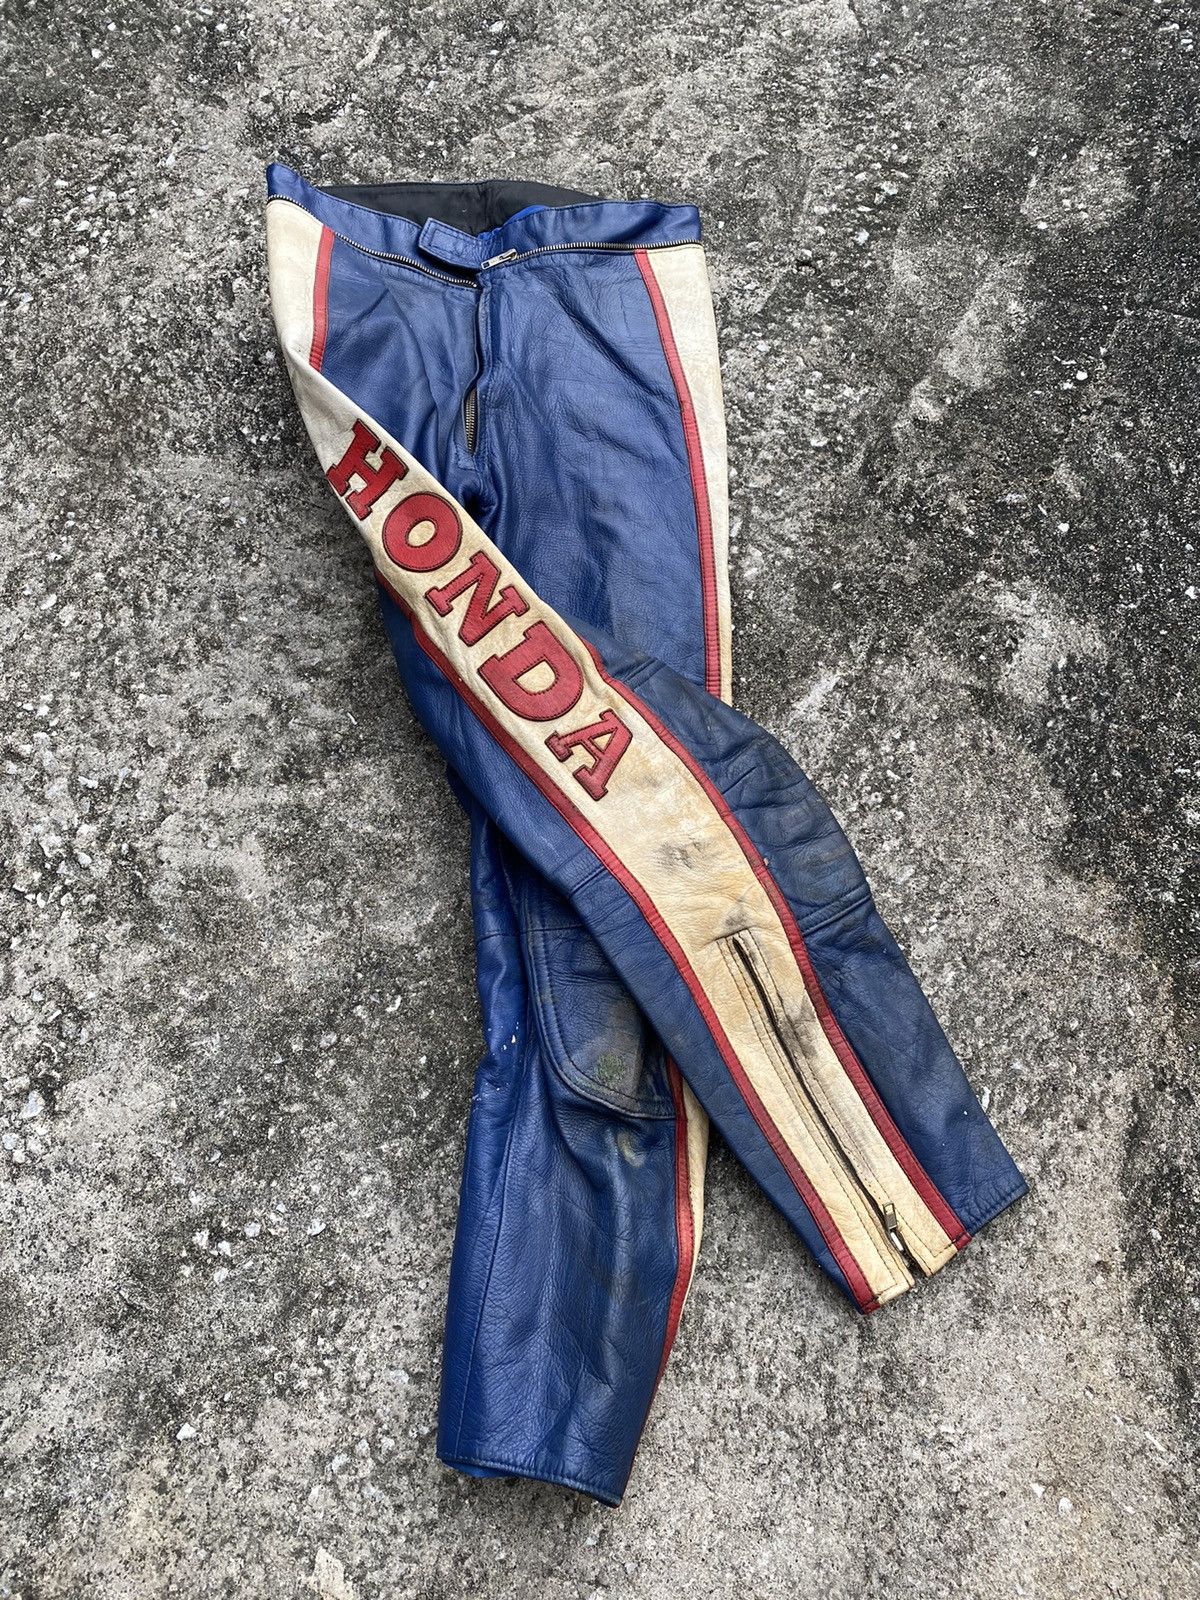 Vintage Honda Racing Leather Pant Motorcycle - 3